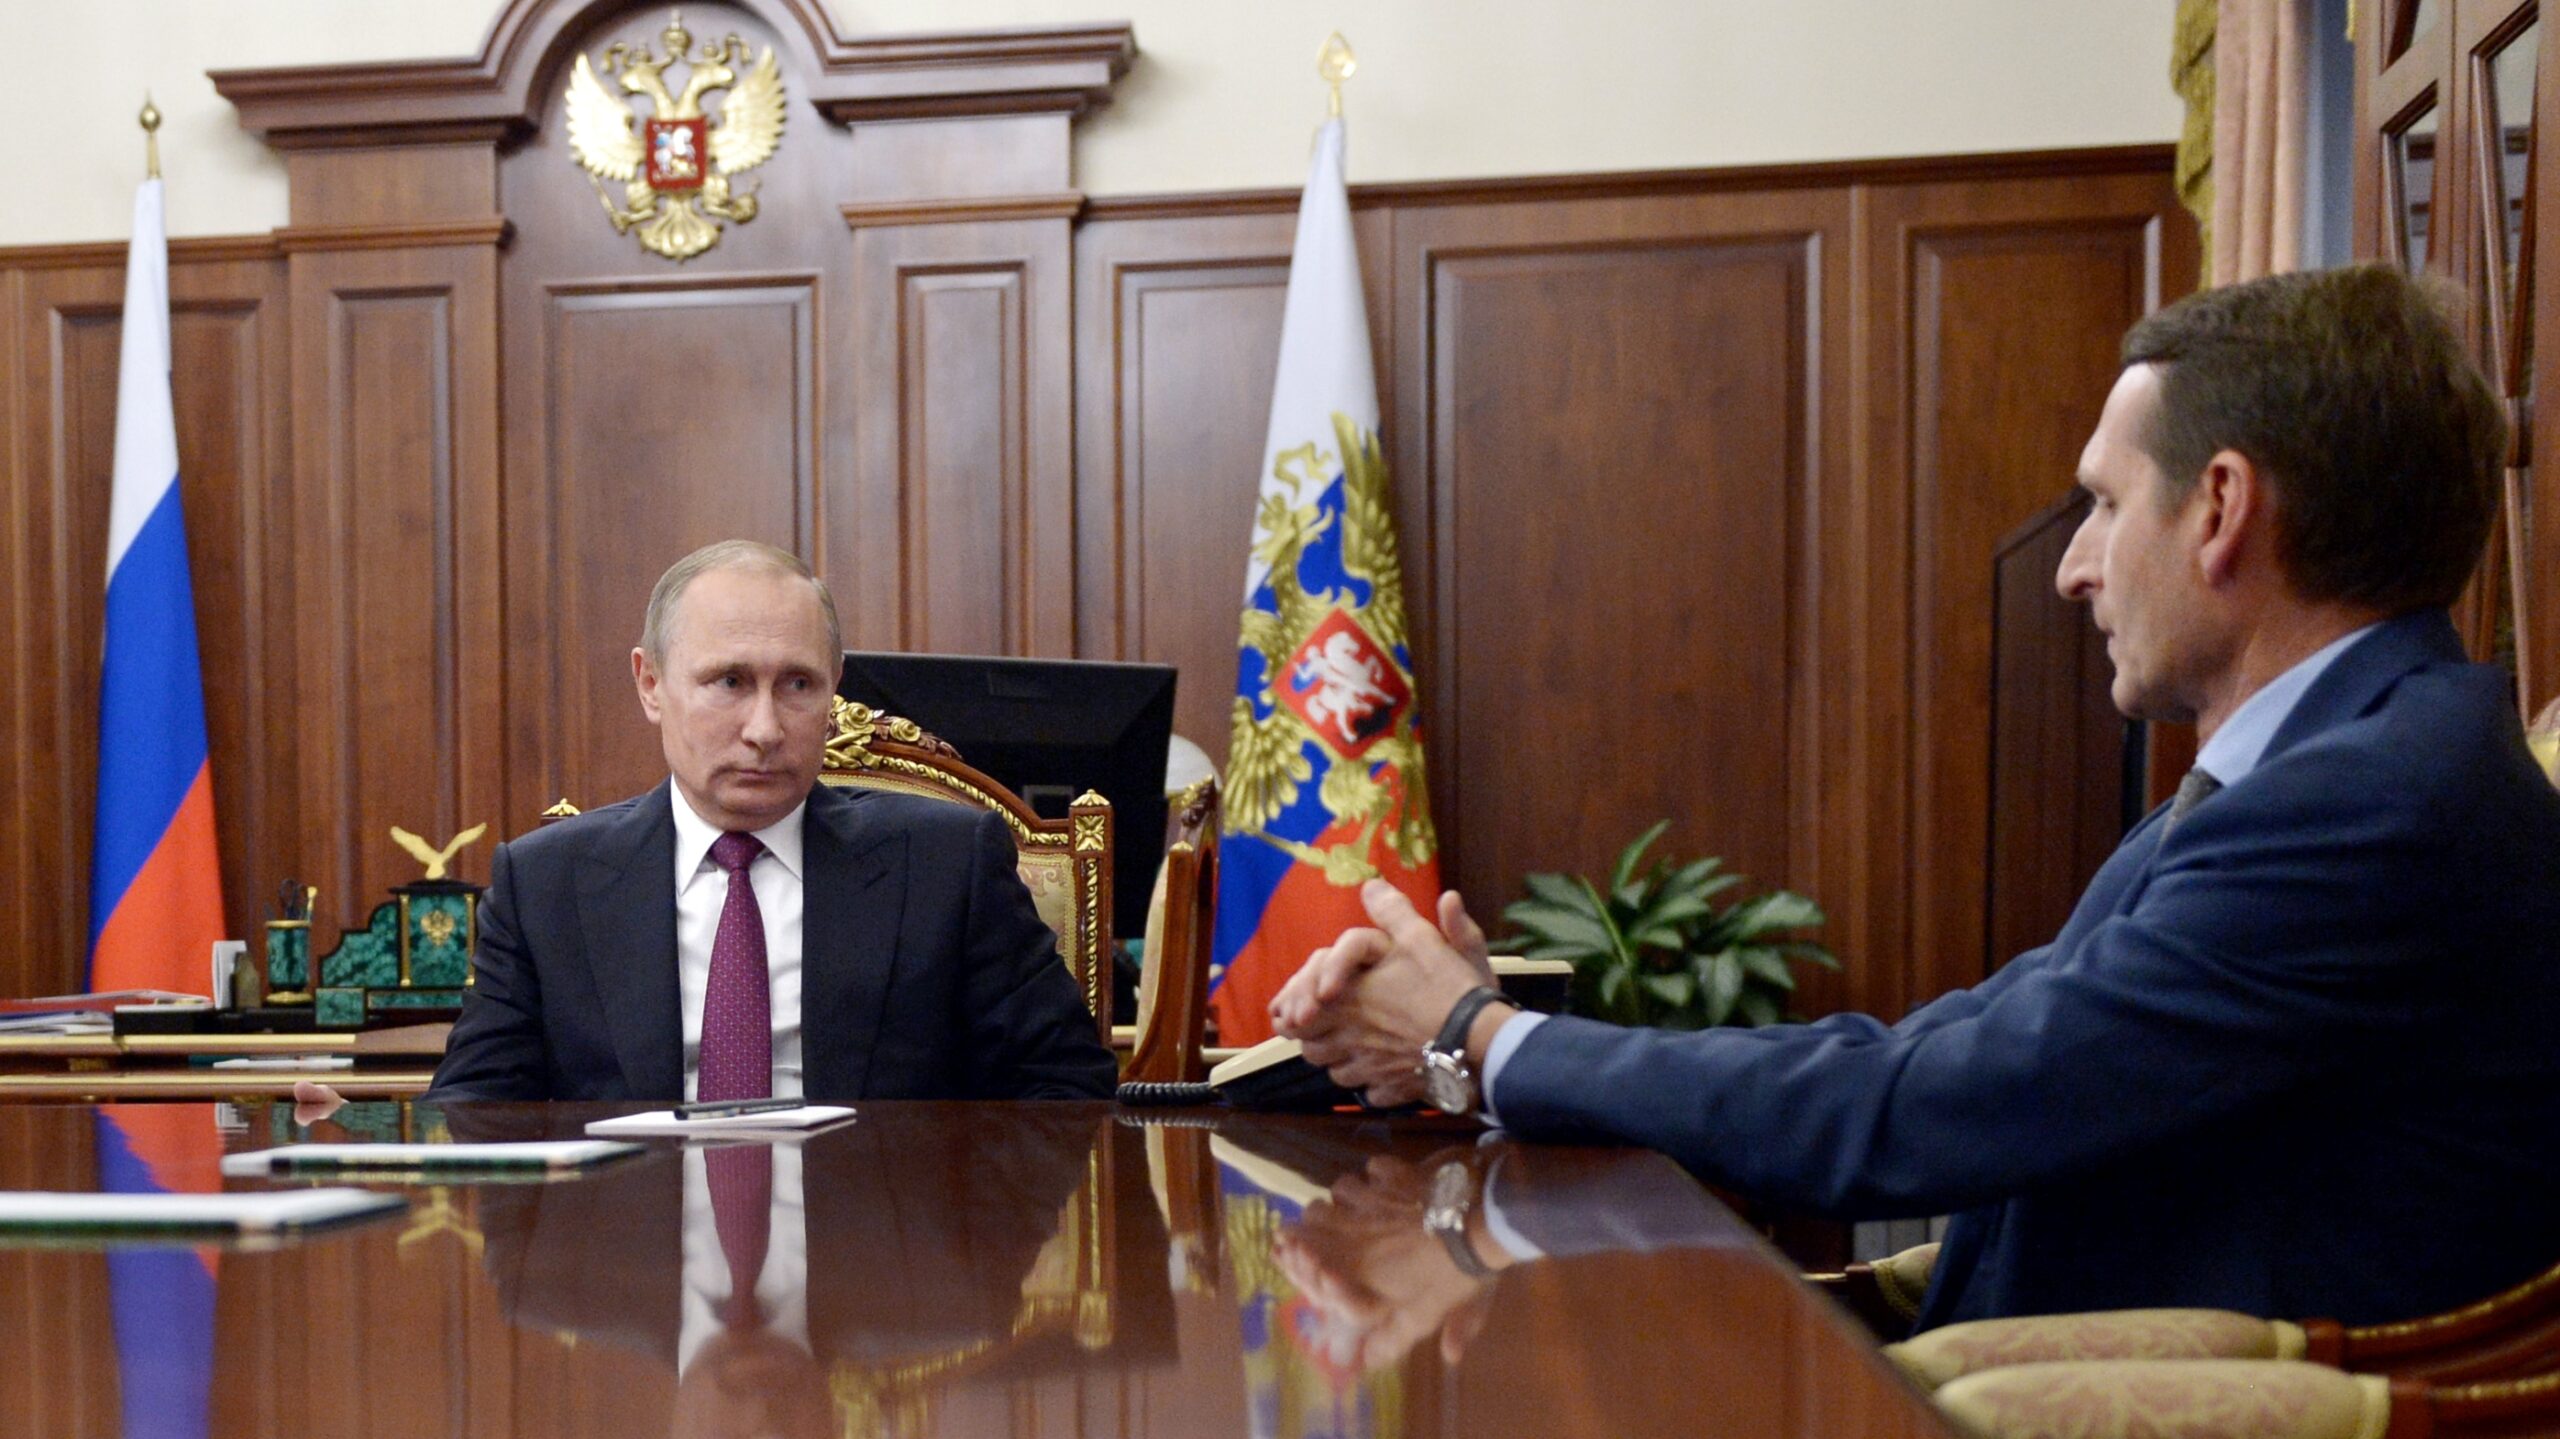 Il retroscena: i servizi segreti interni di Mosca dissero a Putin che serviva più tempo per l'invasione